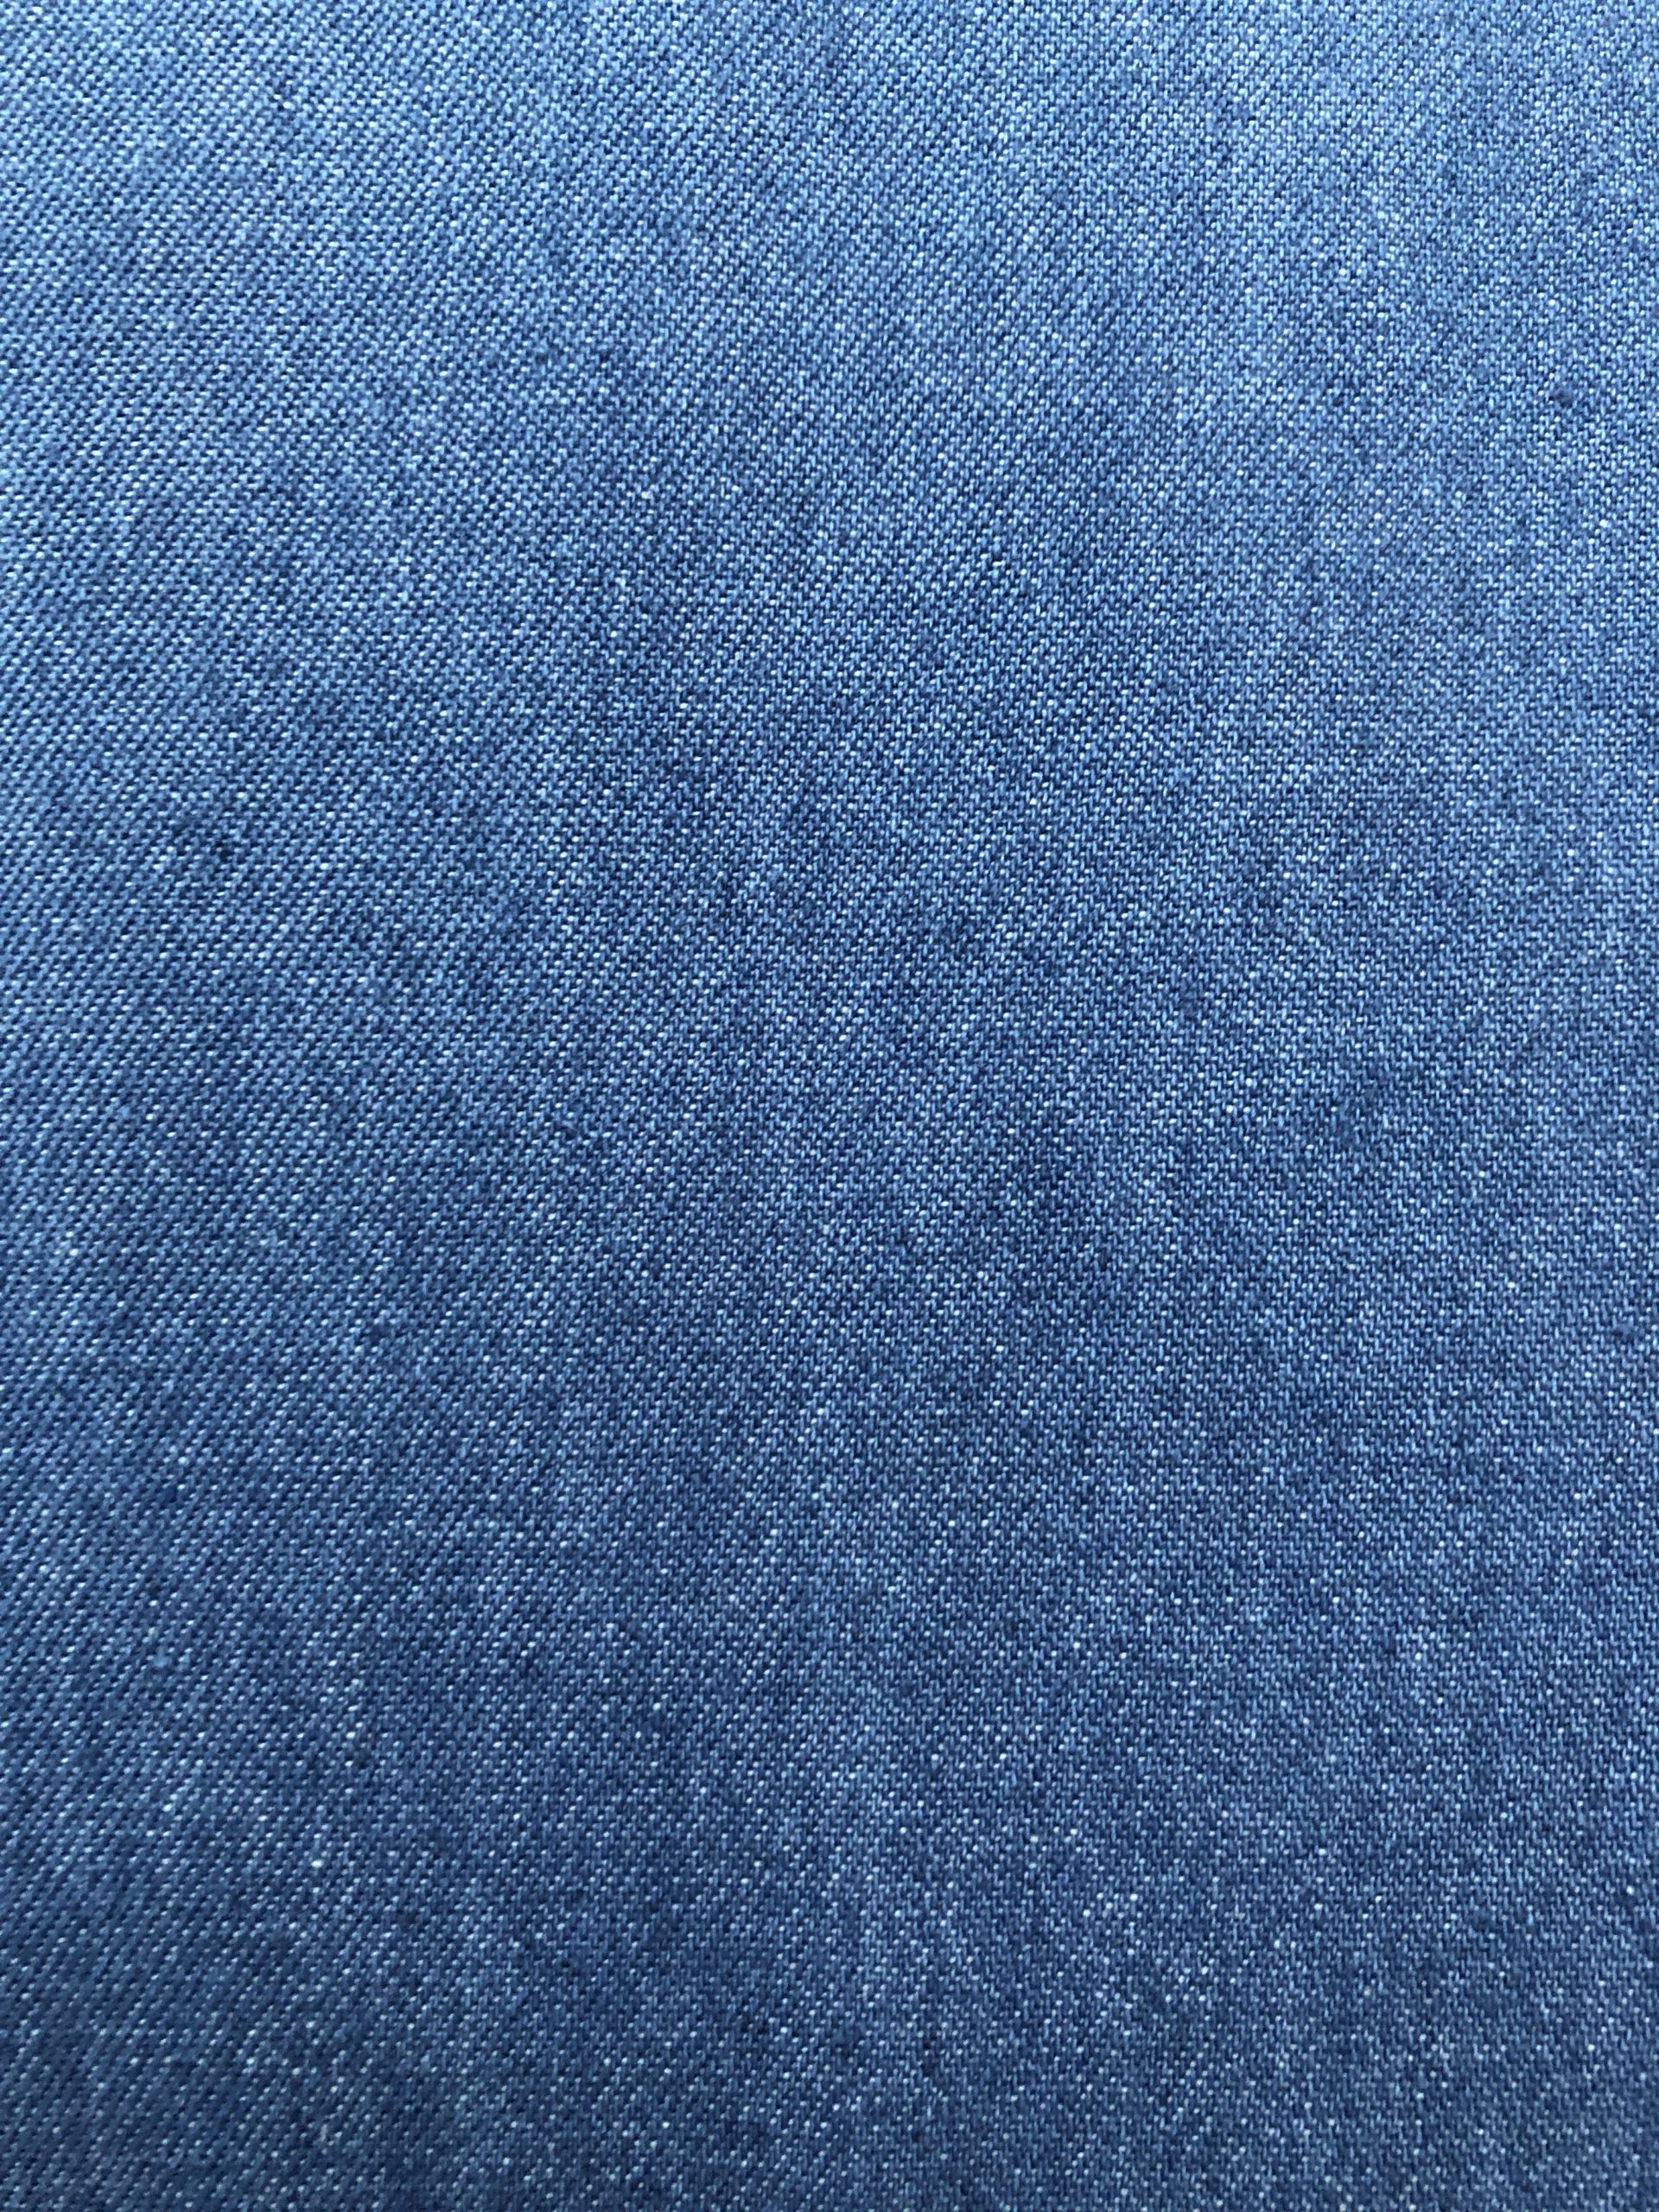 Mid blue Washed 8oz Denim Simply Fabrics